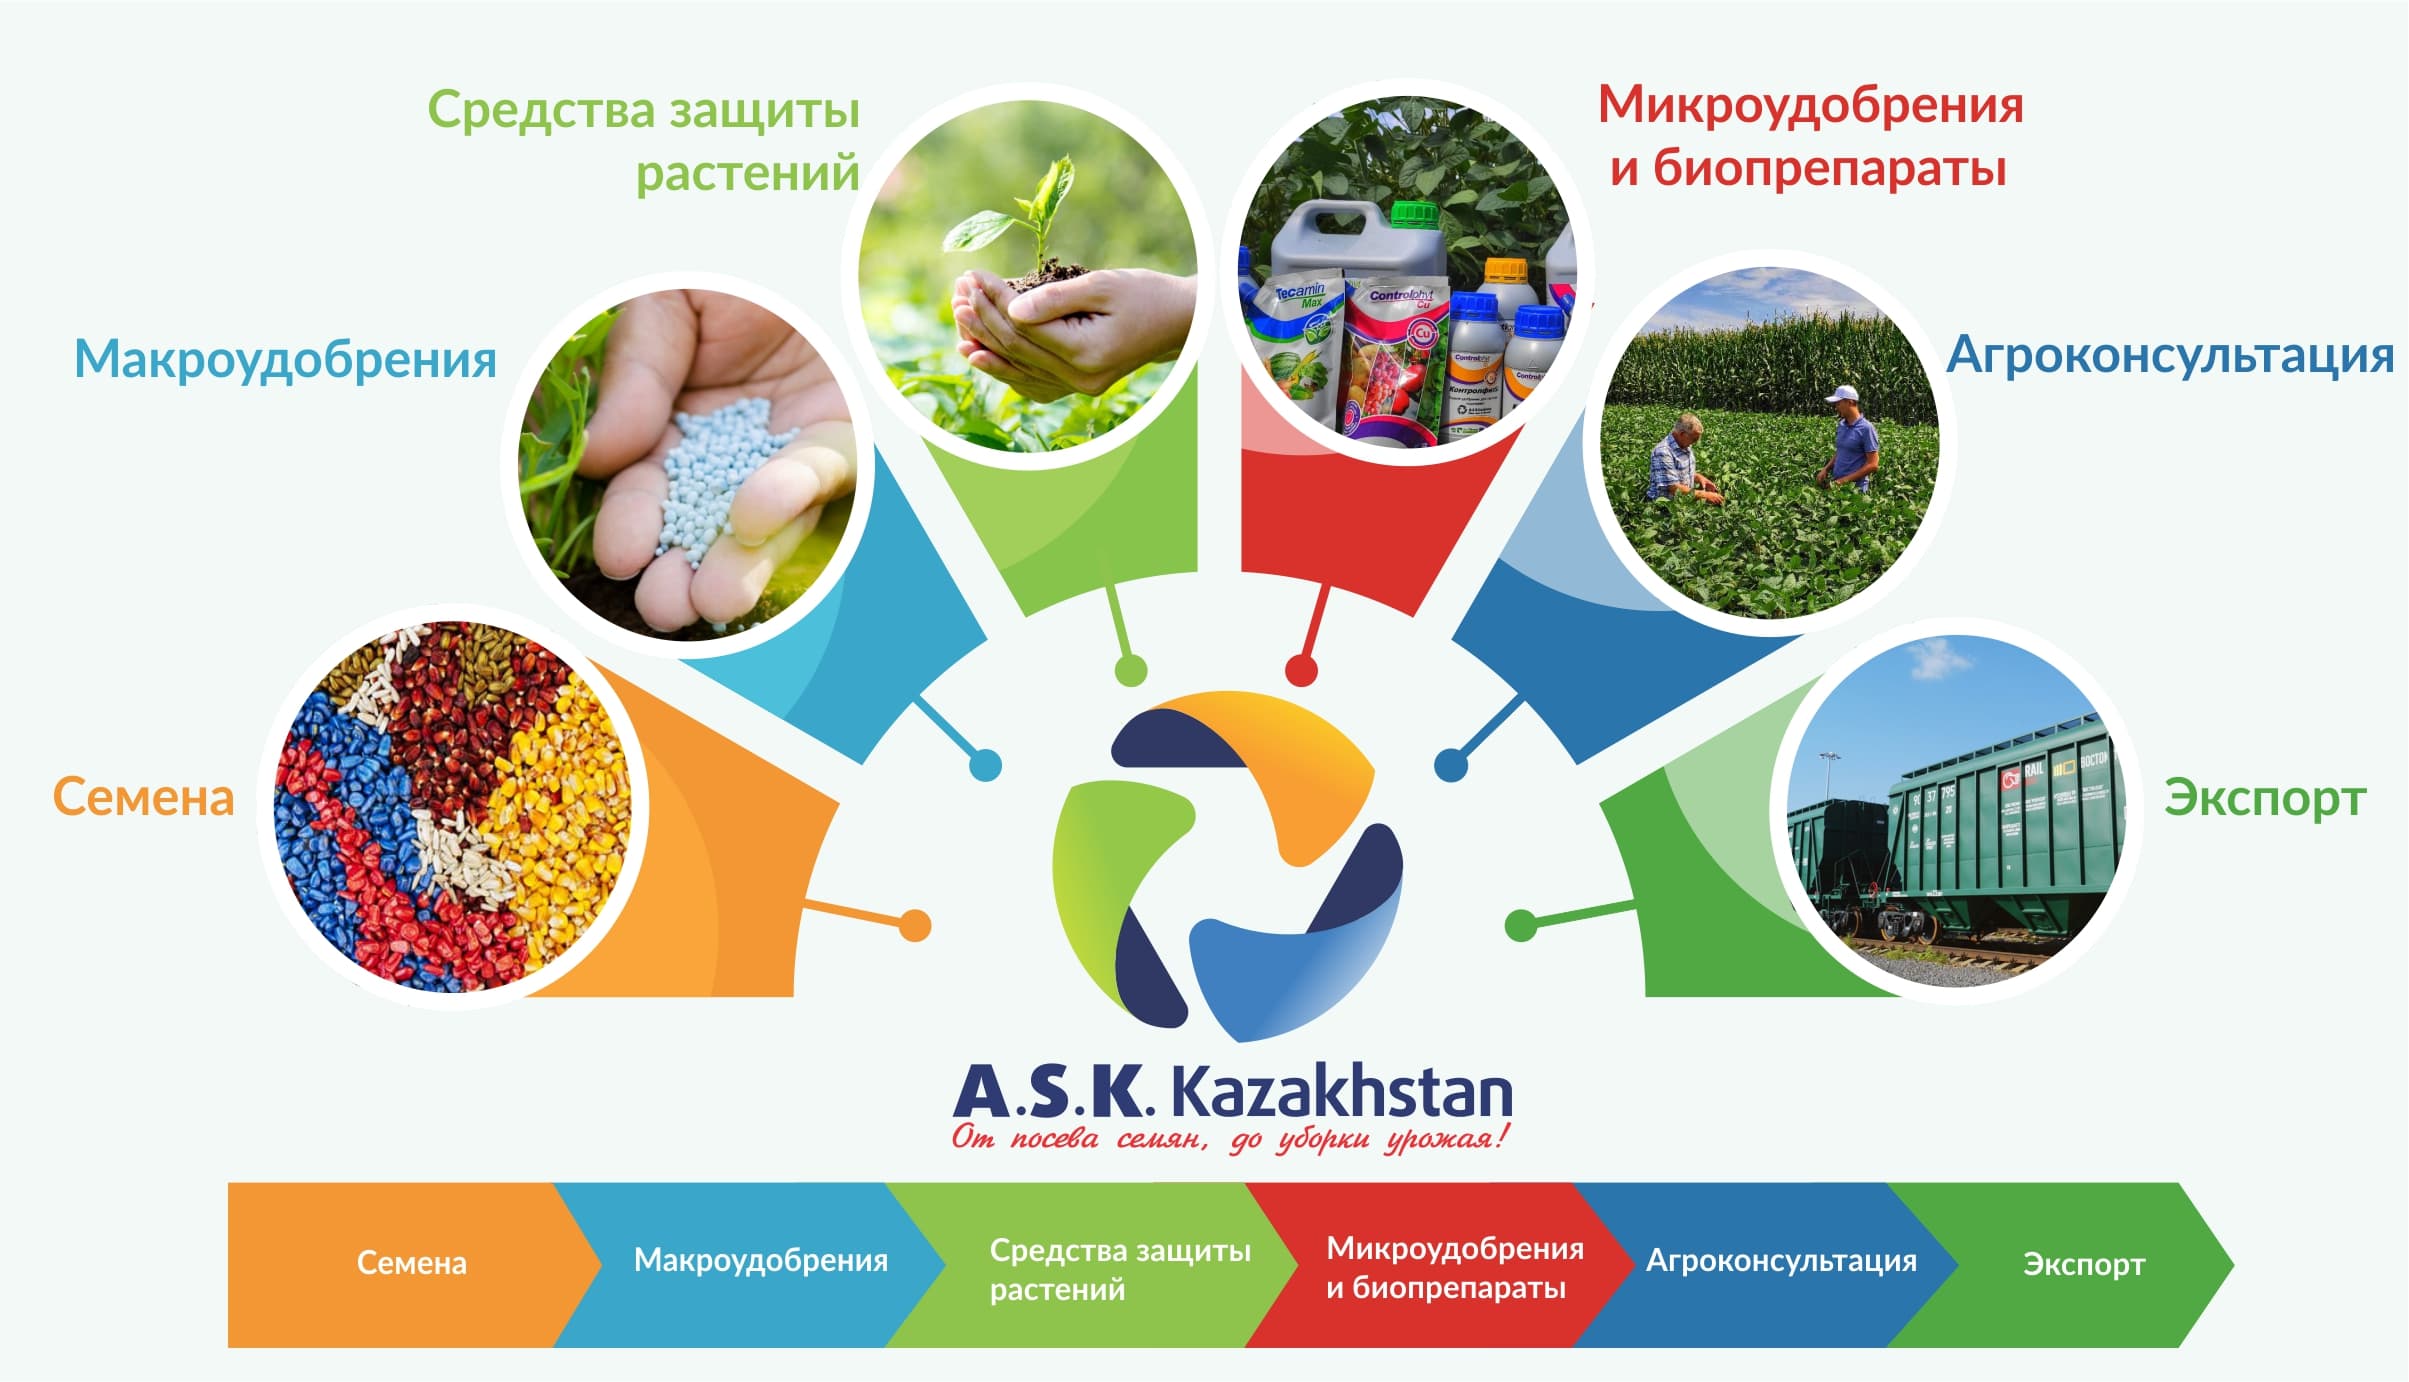 Компания «A.S.K. Kazakhstan» – один из лидеров на рынке семян в Казахстане